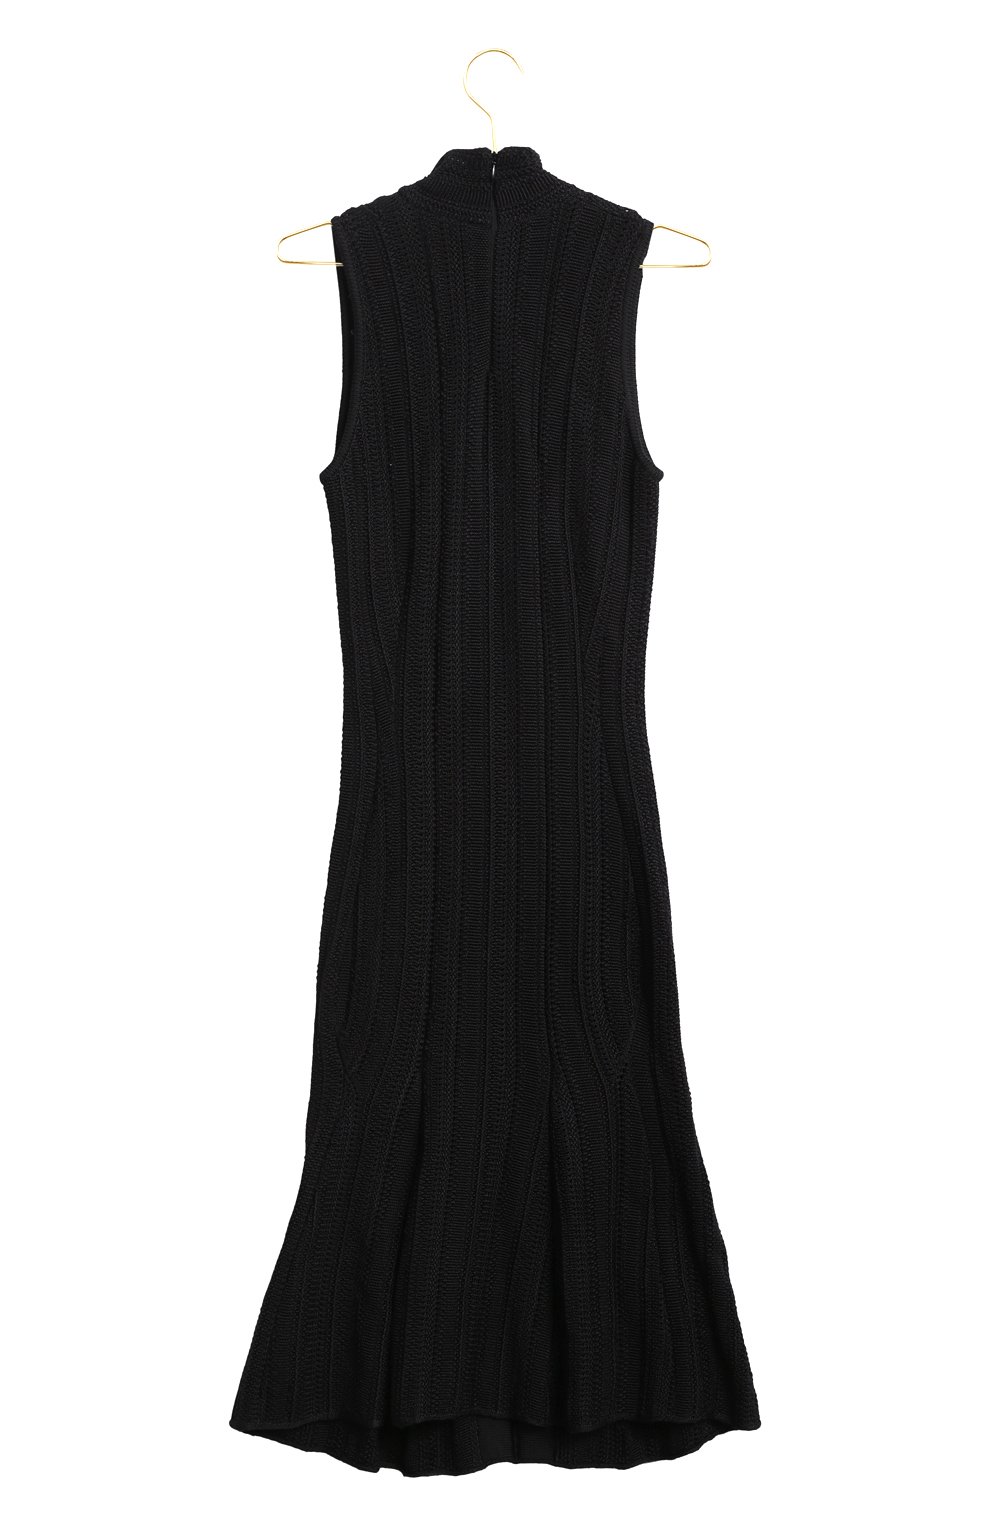 Шелковое платье | Ralph Lauren | Чёрный - 2